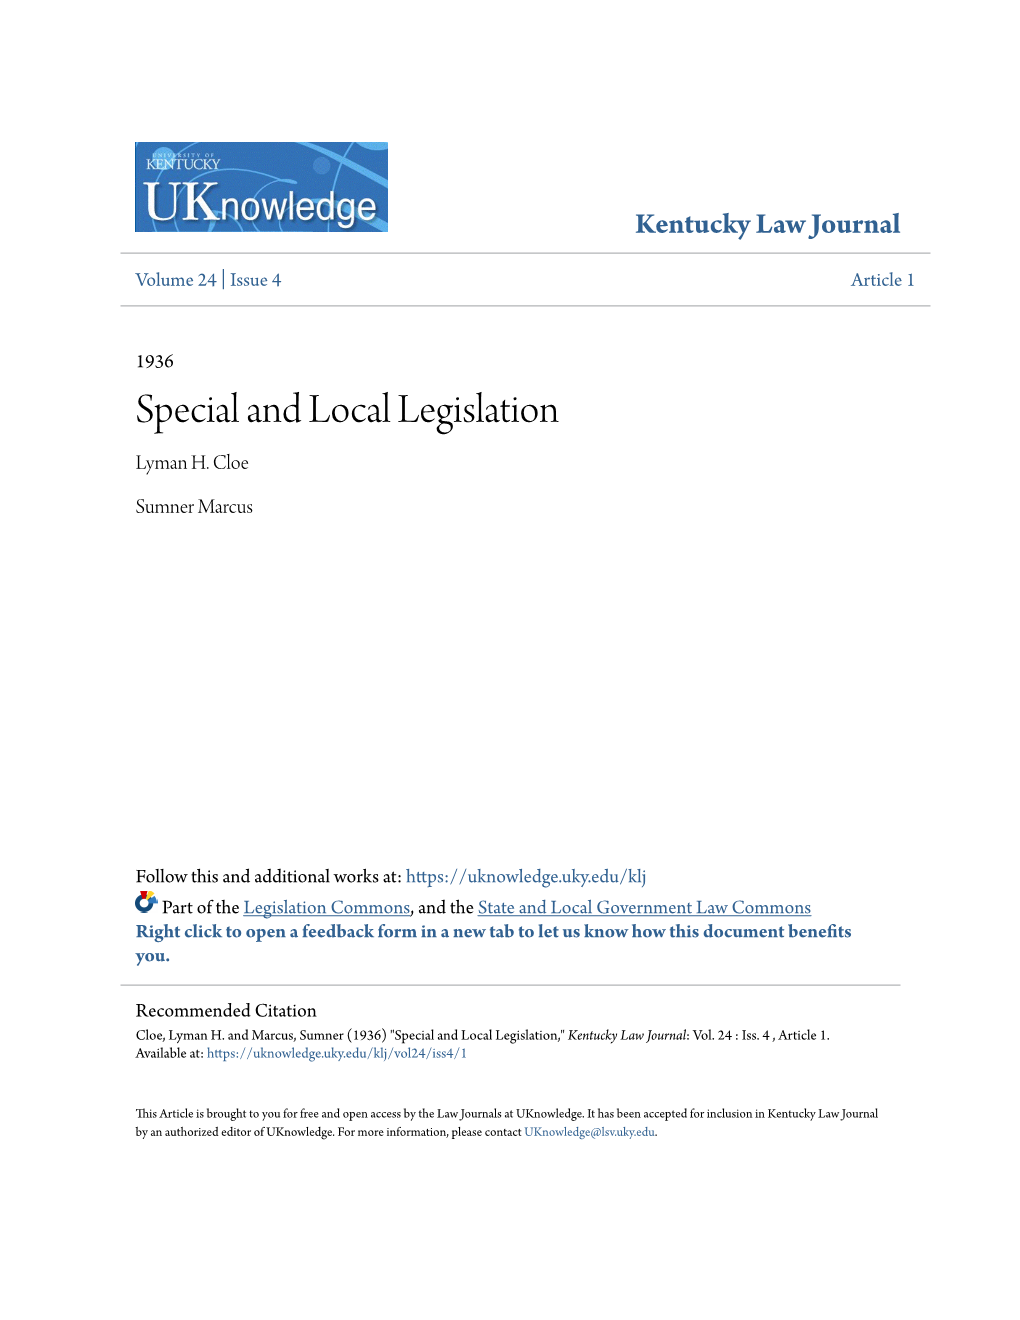 Special and Local Legislation Lyman H